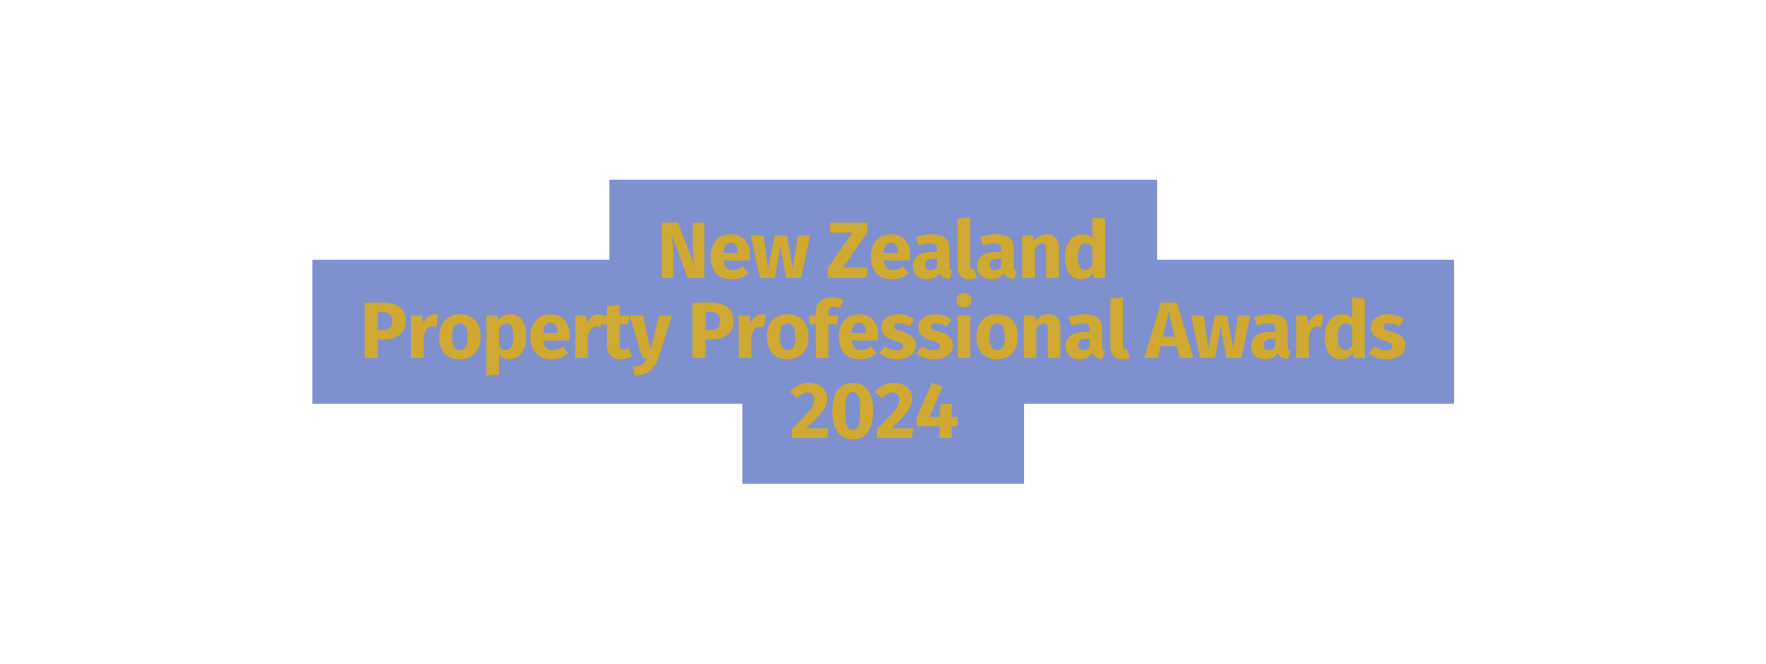 New Zealand Property Professional Awards 2024